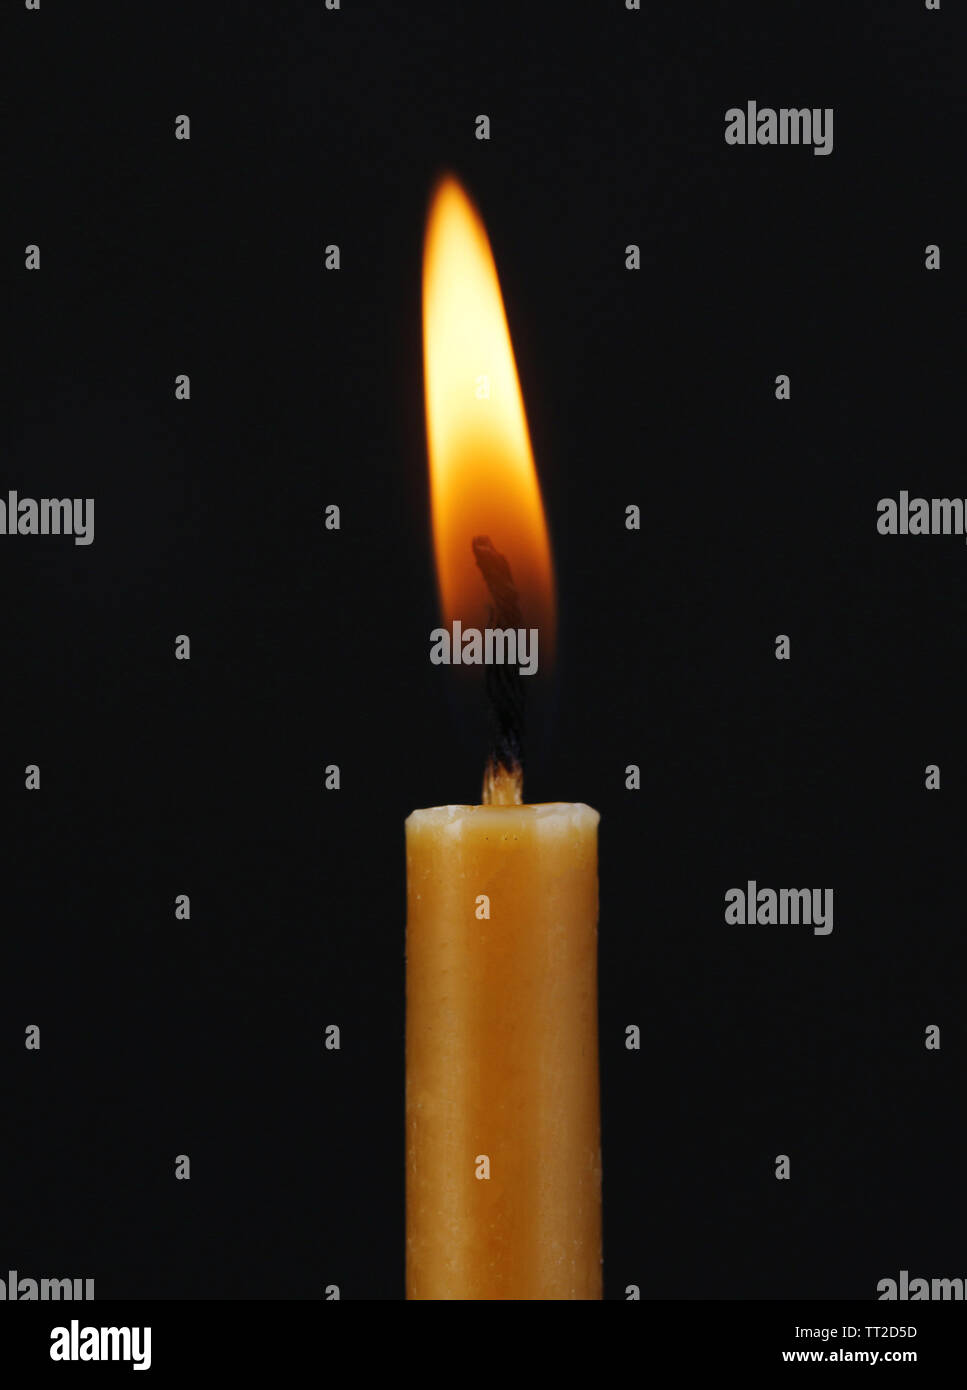 Burning candle on black background Stock Photo